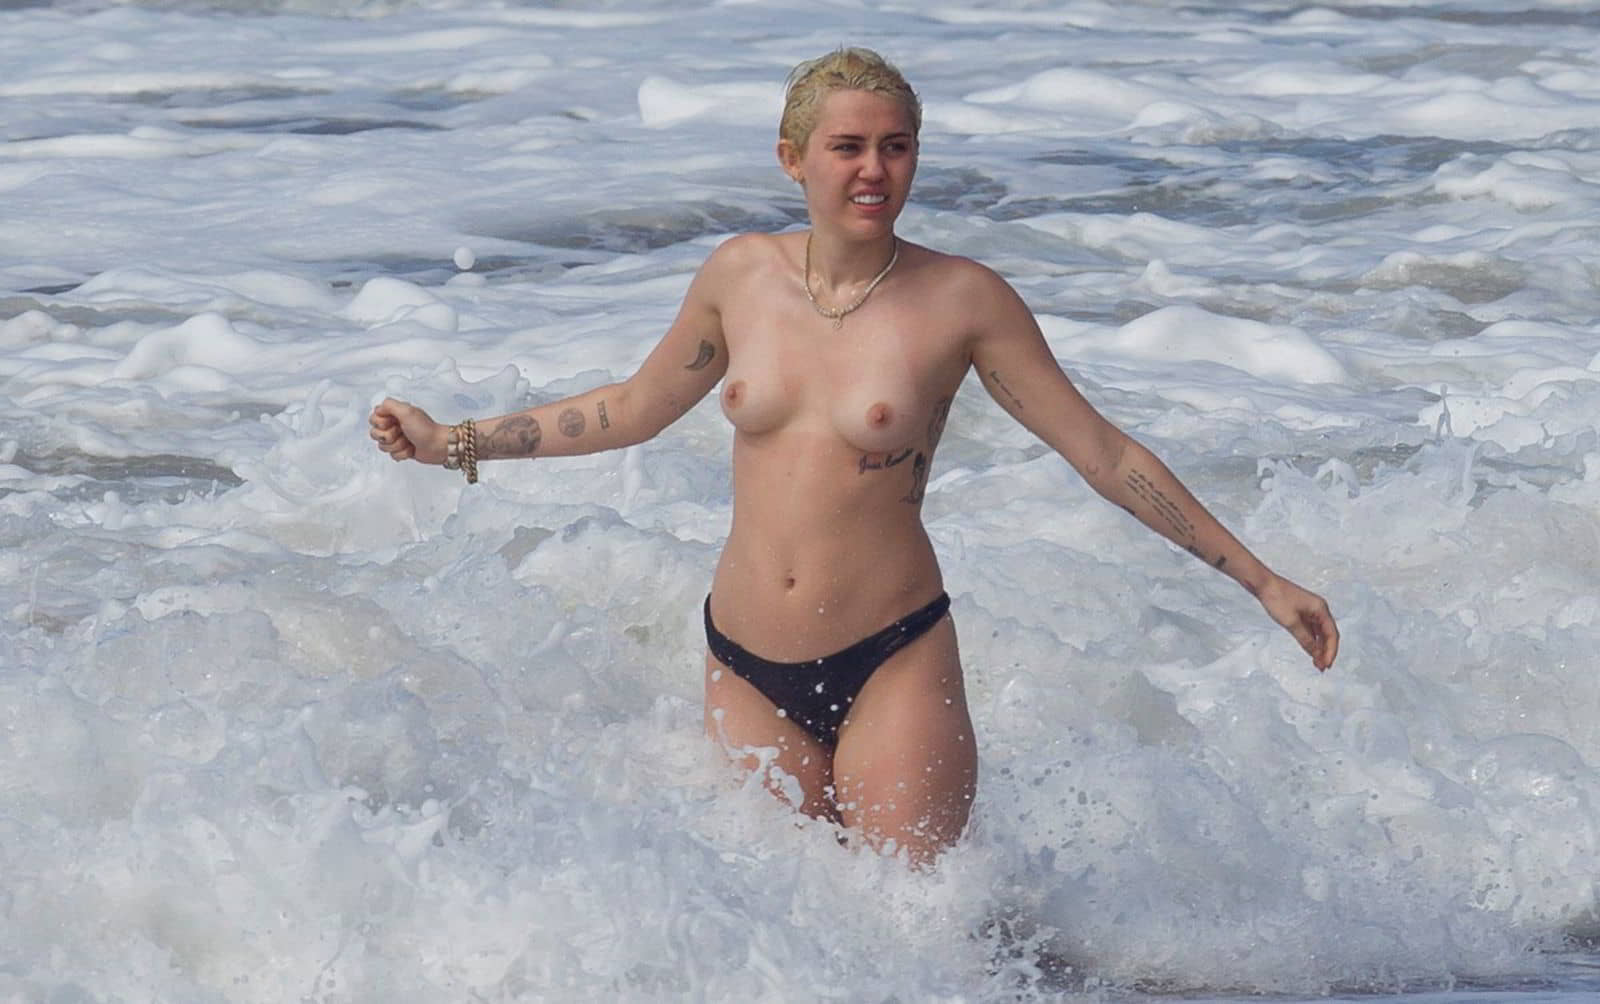 miley-cyrus-topless-bikini-candid-photos-in-hawaii-21.jpg